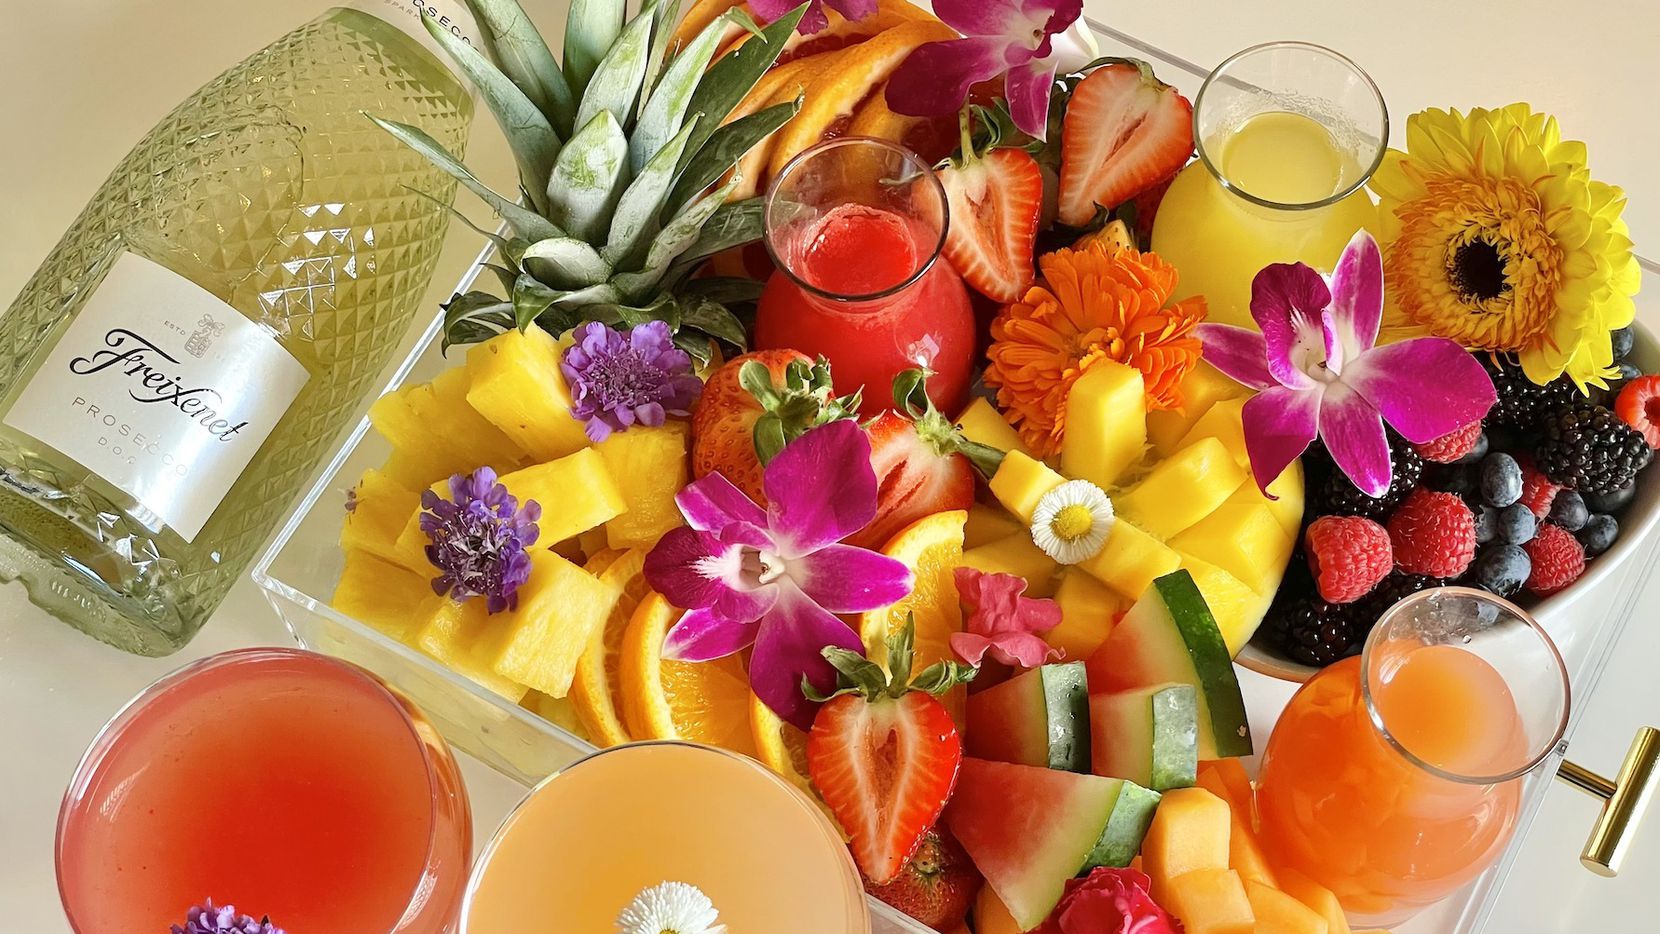 Mexican Sugar ofrece un brunch por el Día de la Madre que incluye mimosas, fruta fresca y...